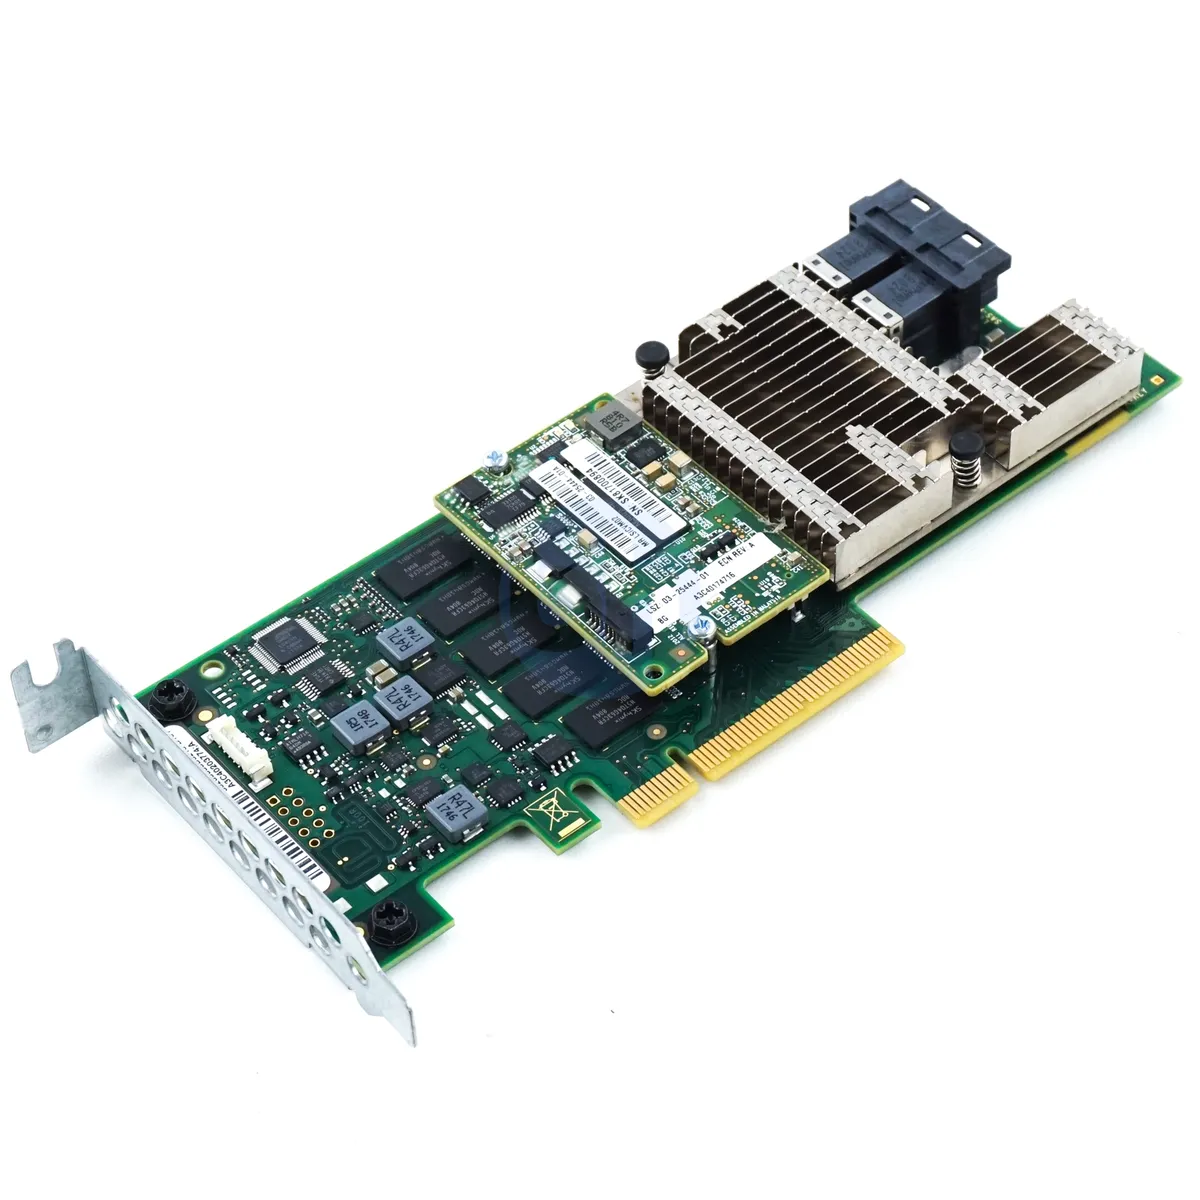 Fujitsu PRAID EP420i 2GB - LP PCIe-x8 SAS 12Gbps RAID Controller